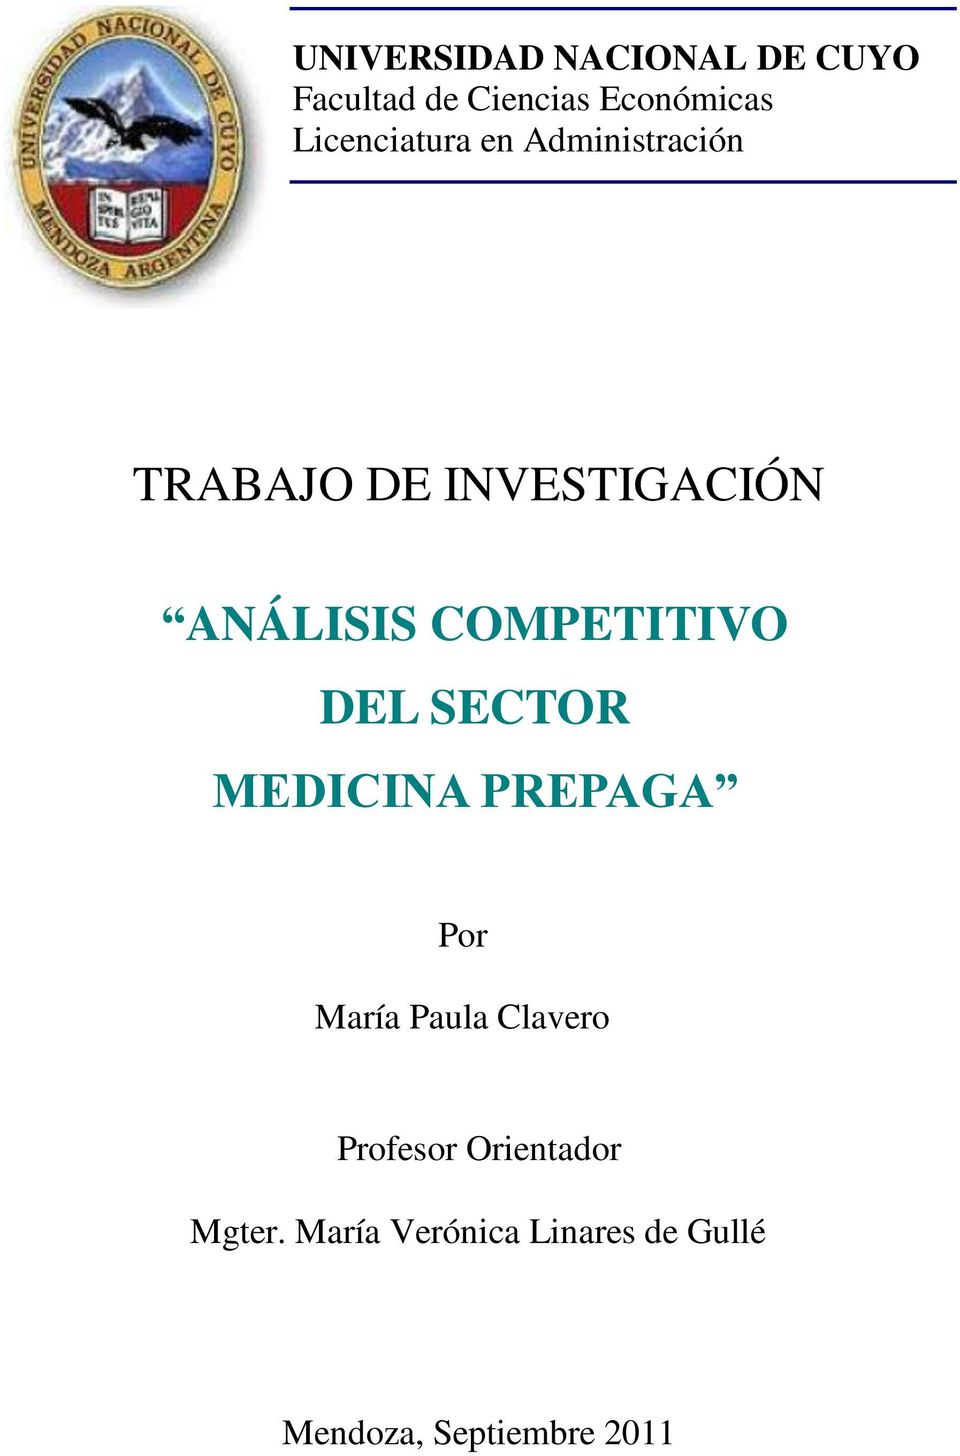 COMPETITIVO DEL SECTOR MEDICINA PREPAGA Por María Paula Clavero